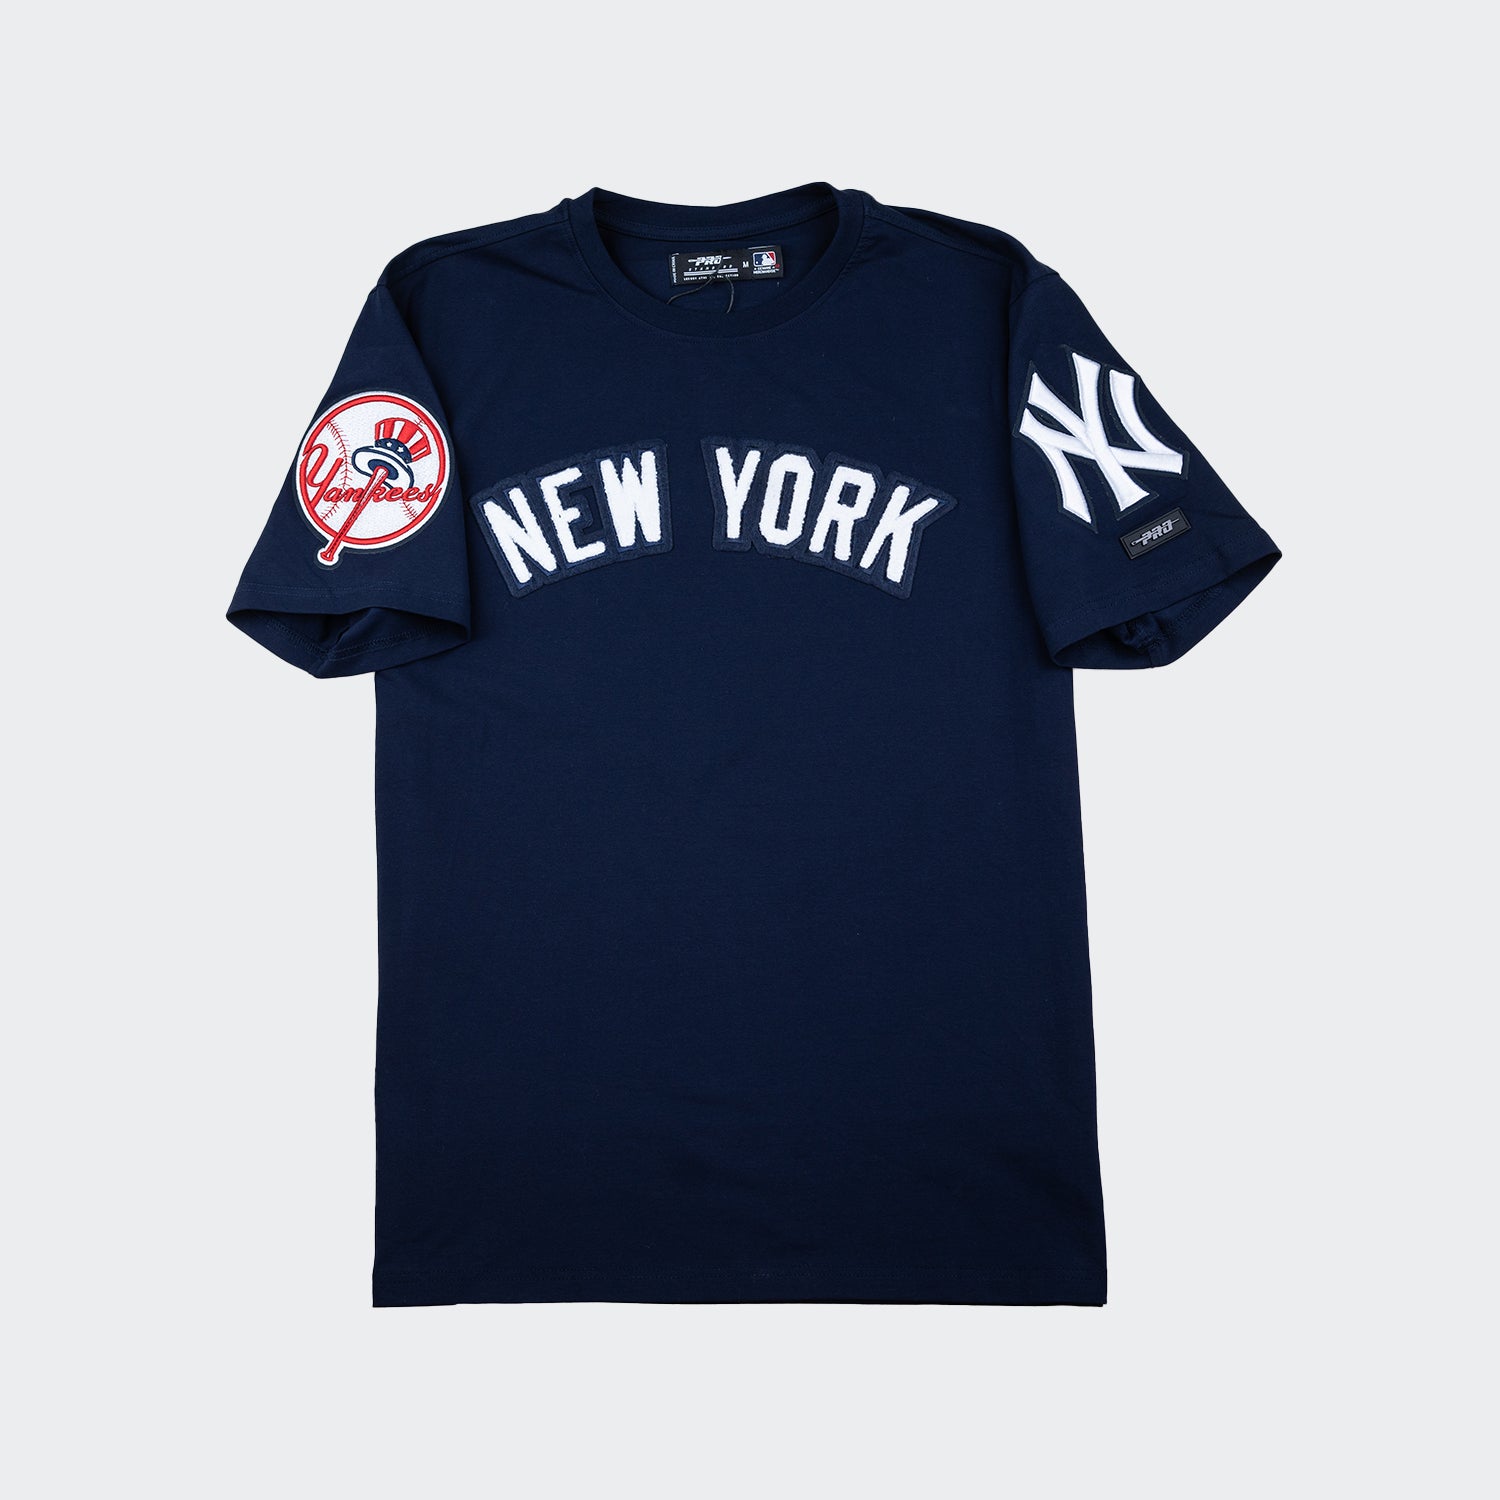 Official Men's New York Yankees Gear, Mens Yankees Apparel, Guys